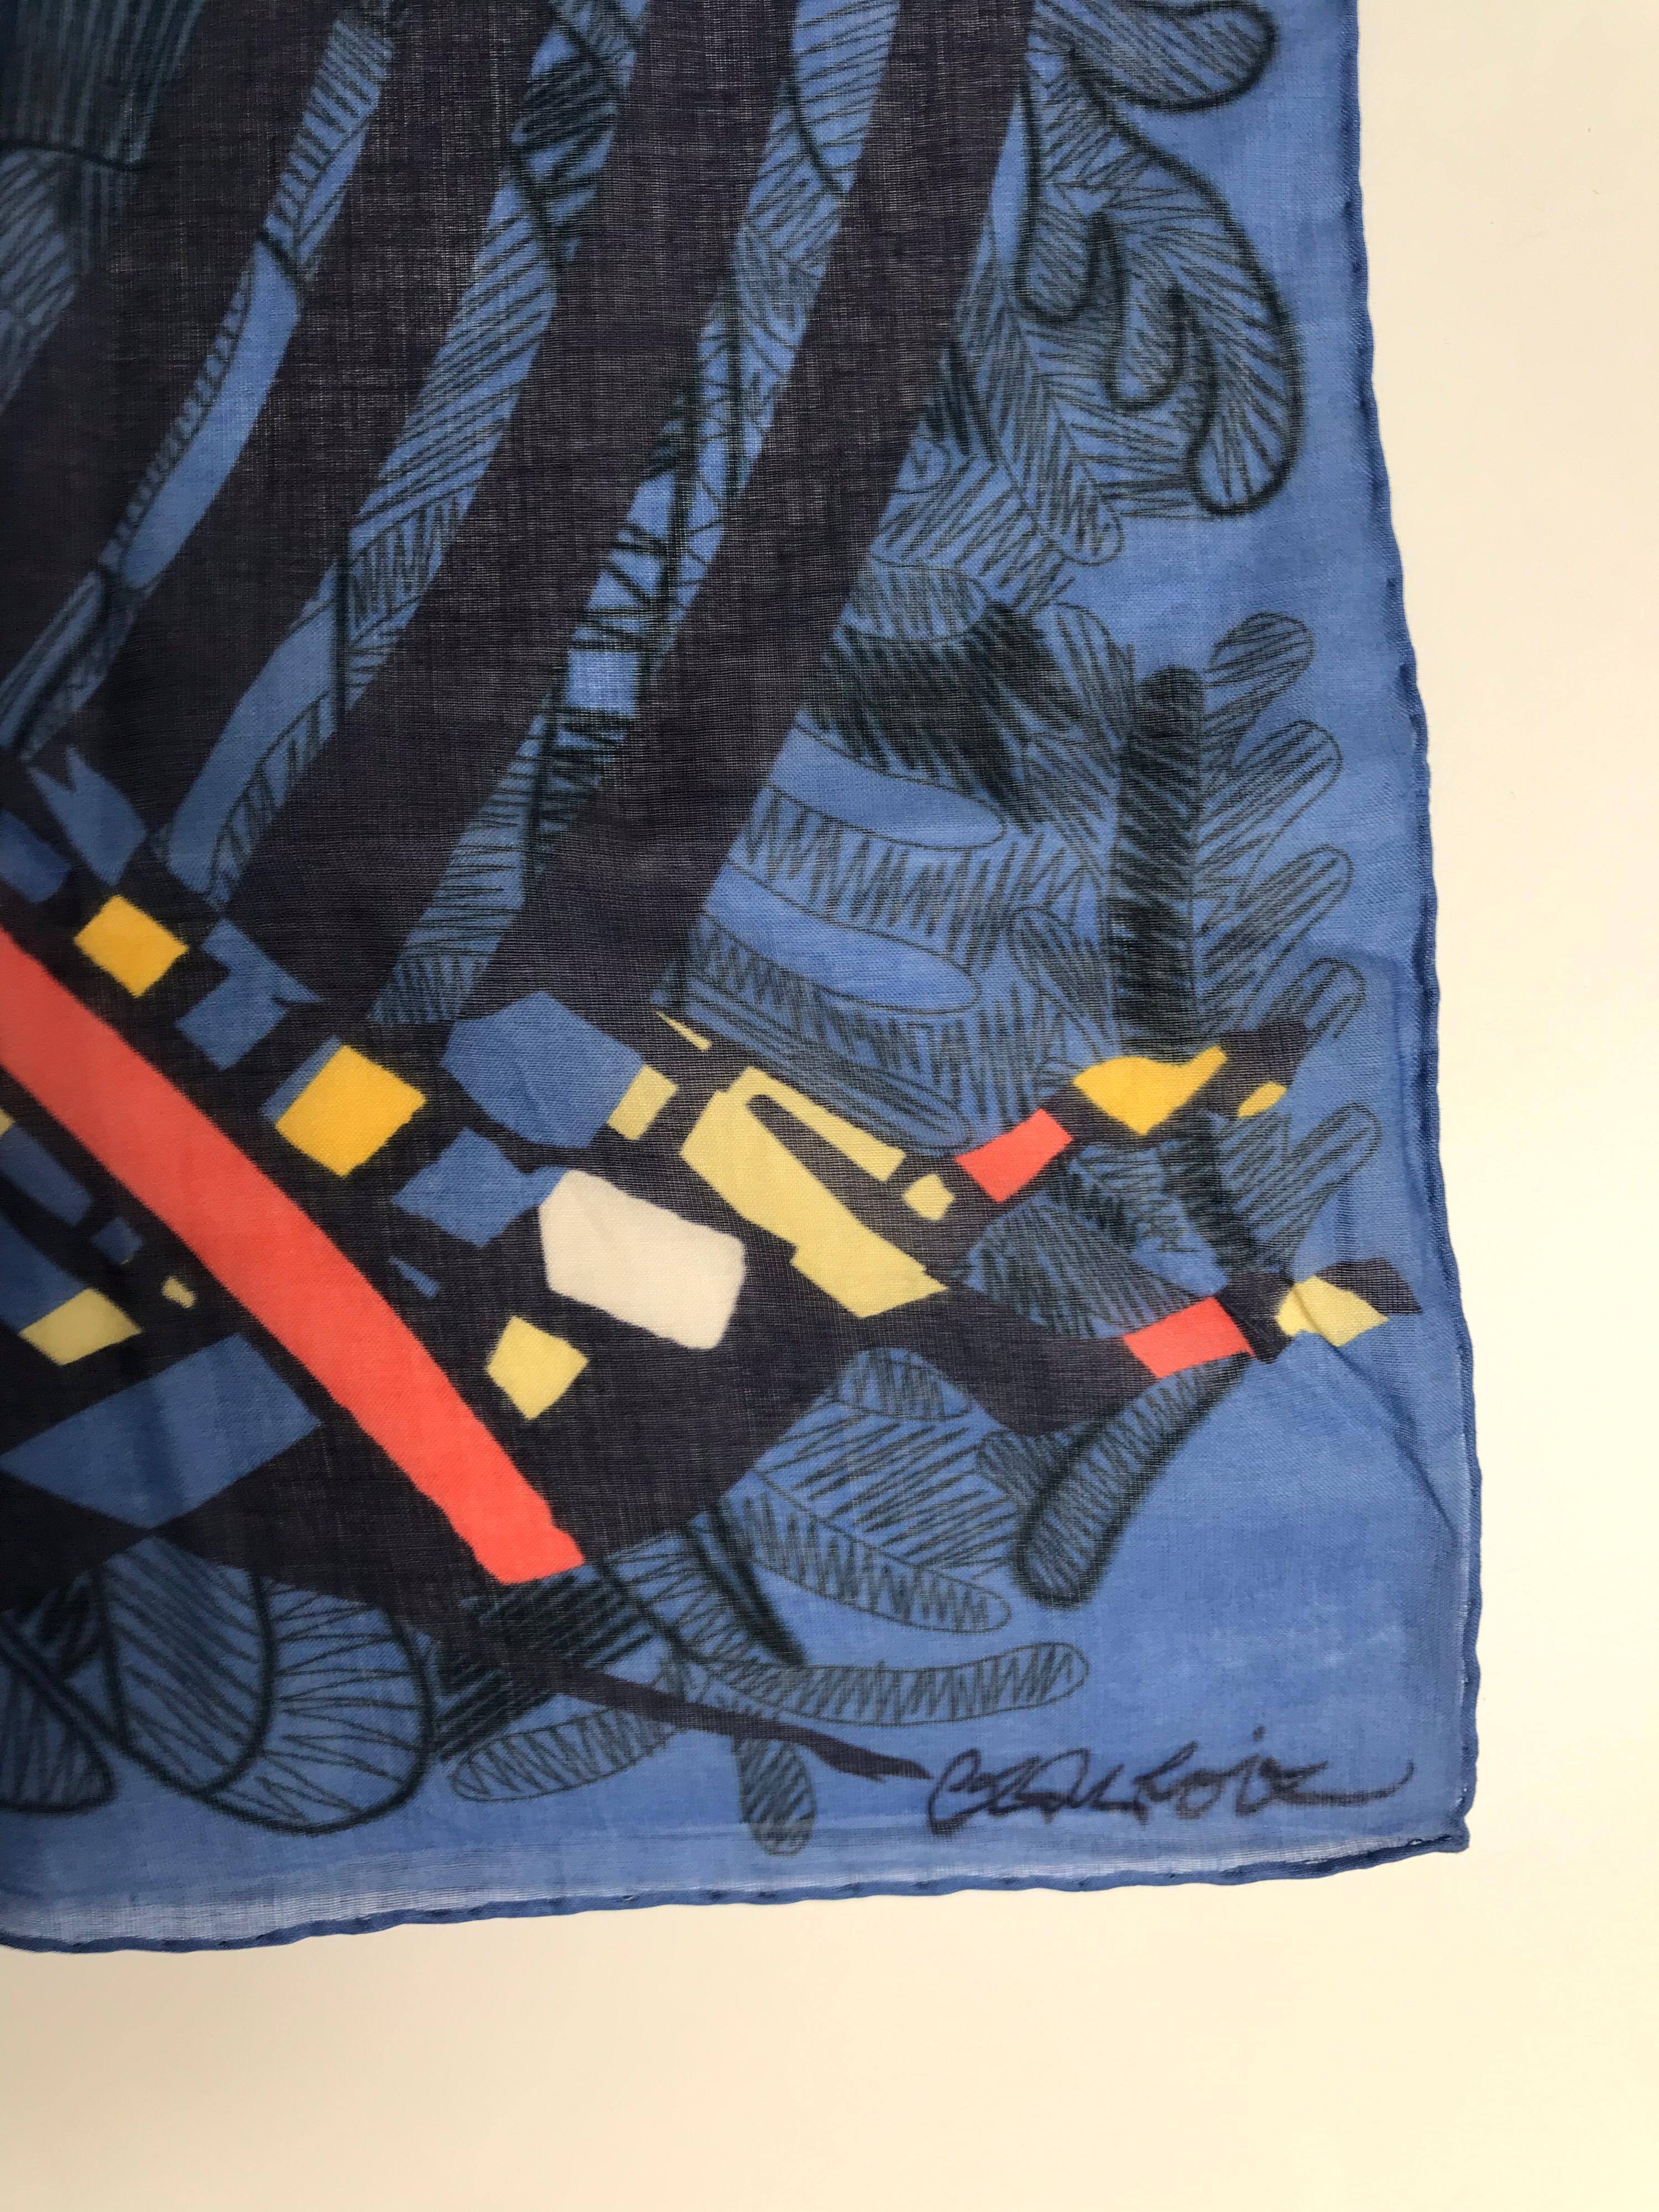 Quadratischer, gewebter Christian Lacroix Schal in Schiefer und Multicolor mit abstraktem Druck und gerollten Kanten. Zustand: Ausgezeichnet.
Länge: 22